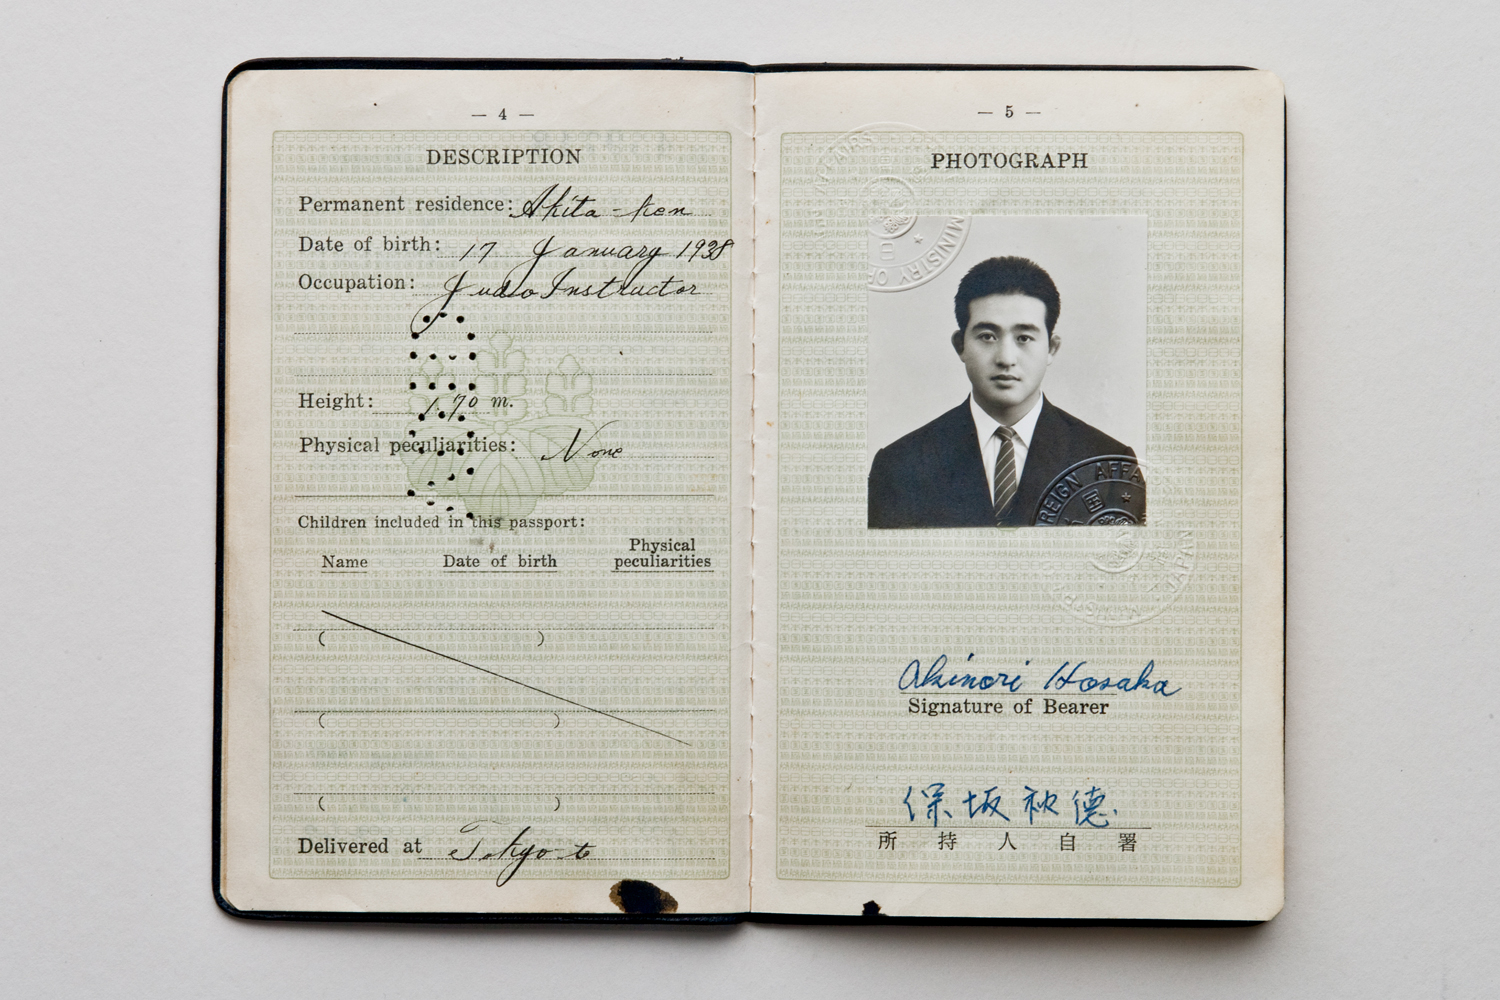  Akinori Hosaka's passport.  He arrived in the UK in 1962. 